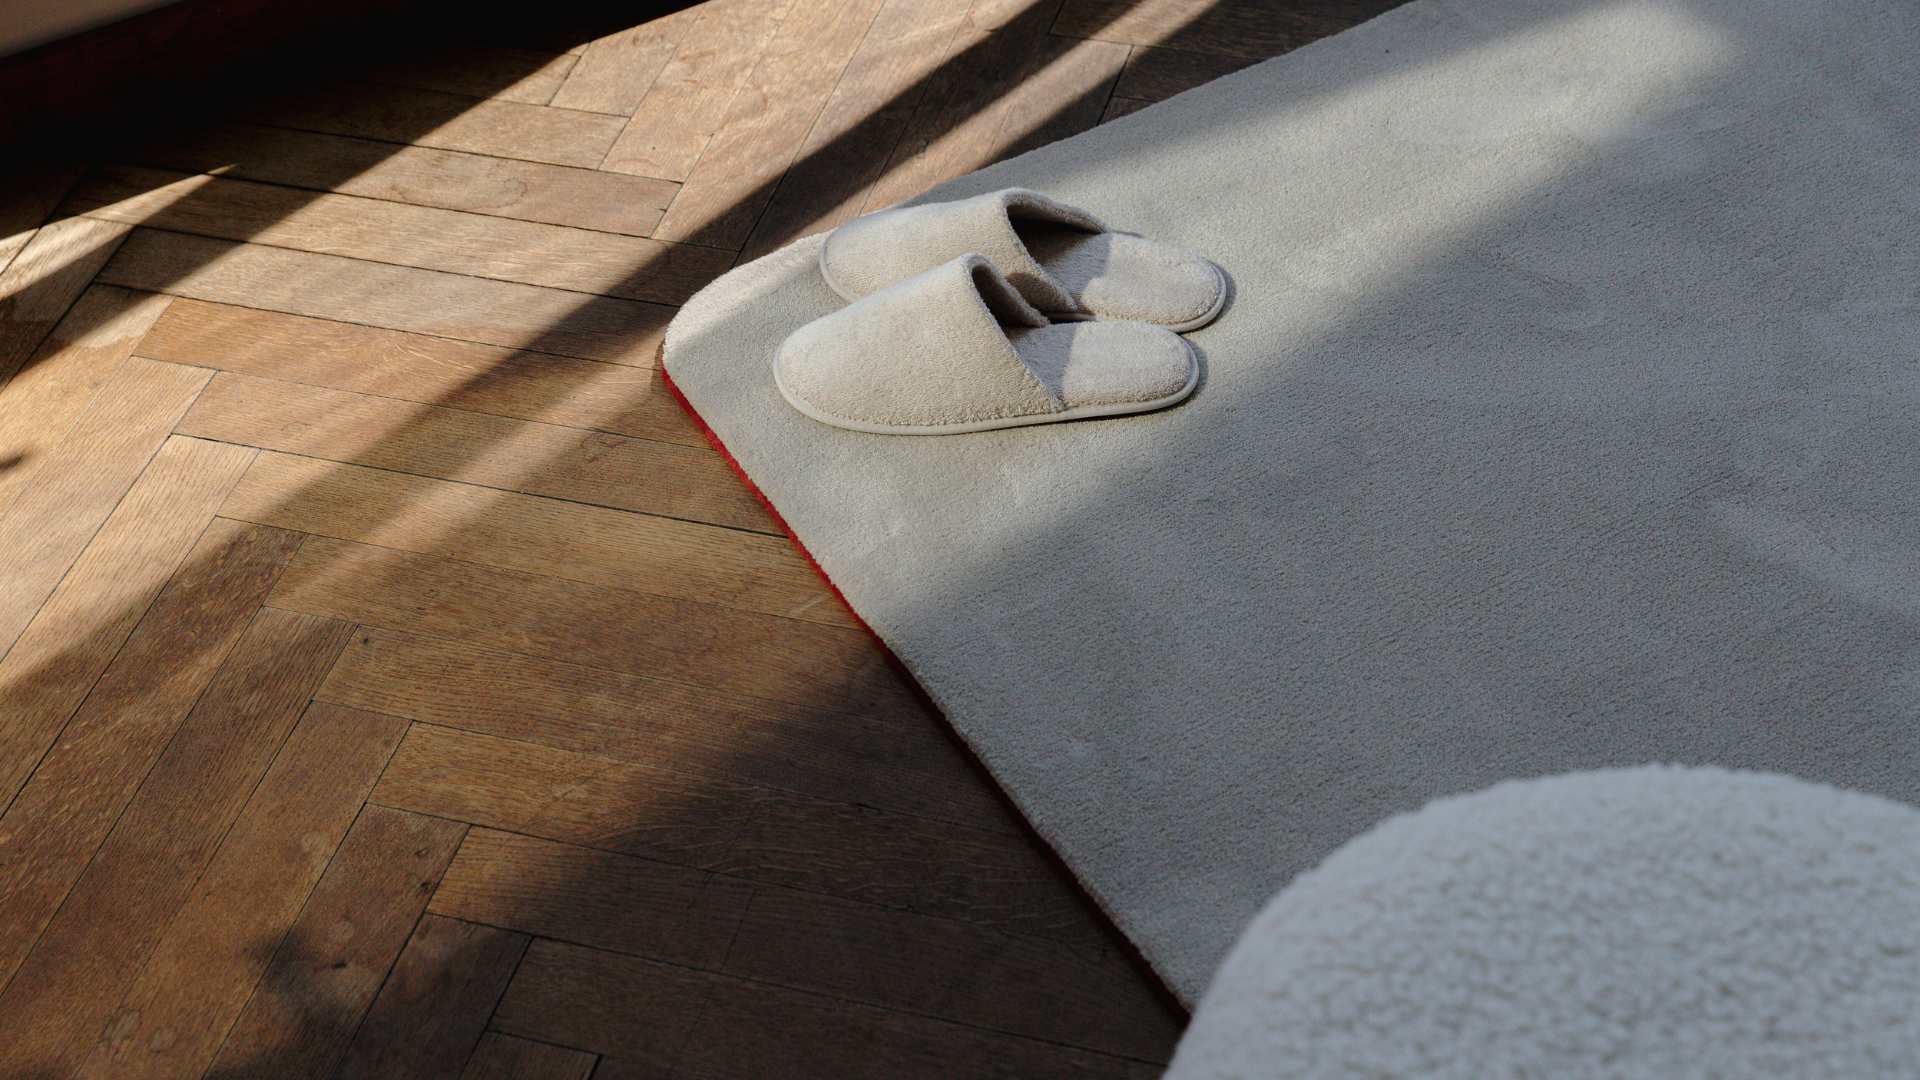 Pantoffels op rechthoekig, zacht duurzaam tapijt en houten parketvloer.